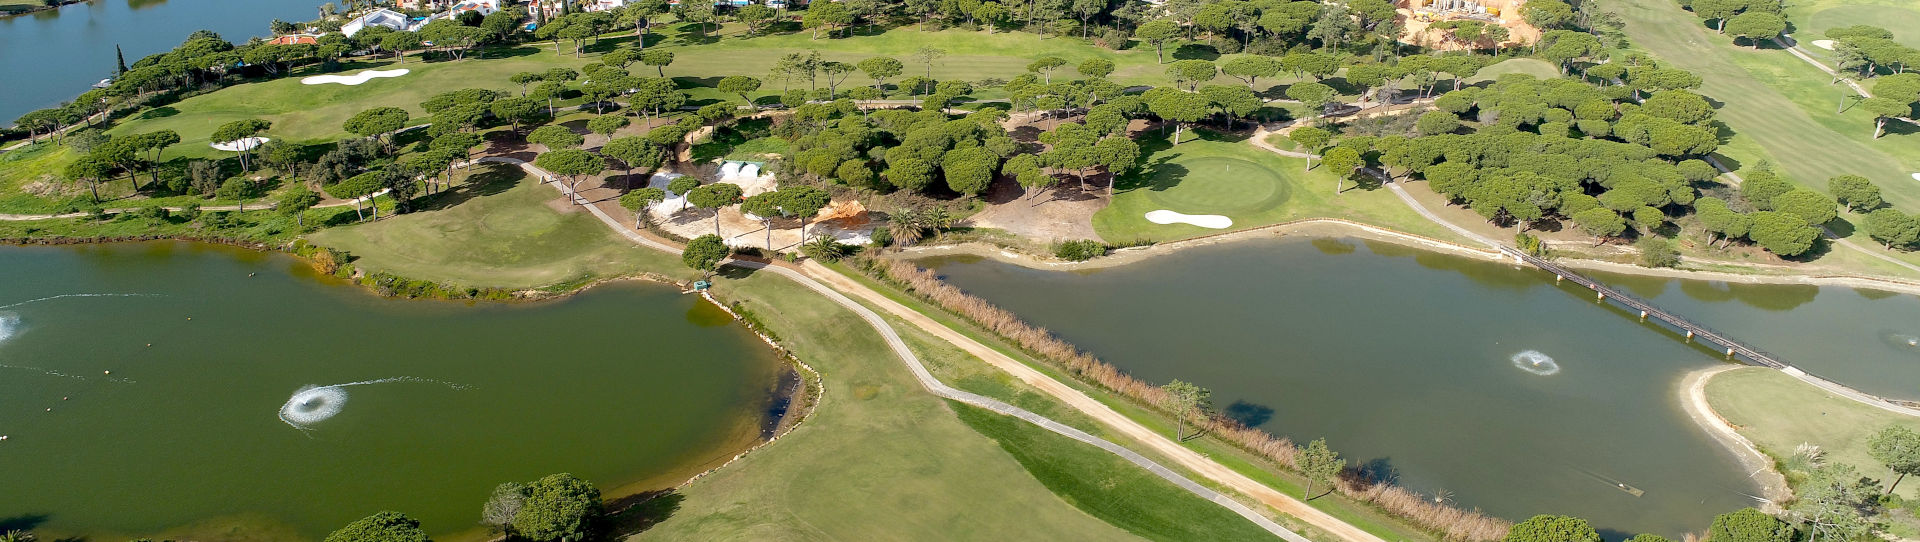 Portugal golf courses - Quinta do Lago South - Photo 2